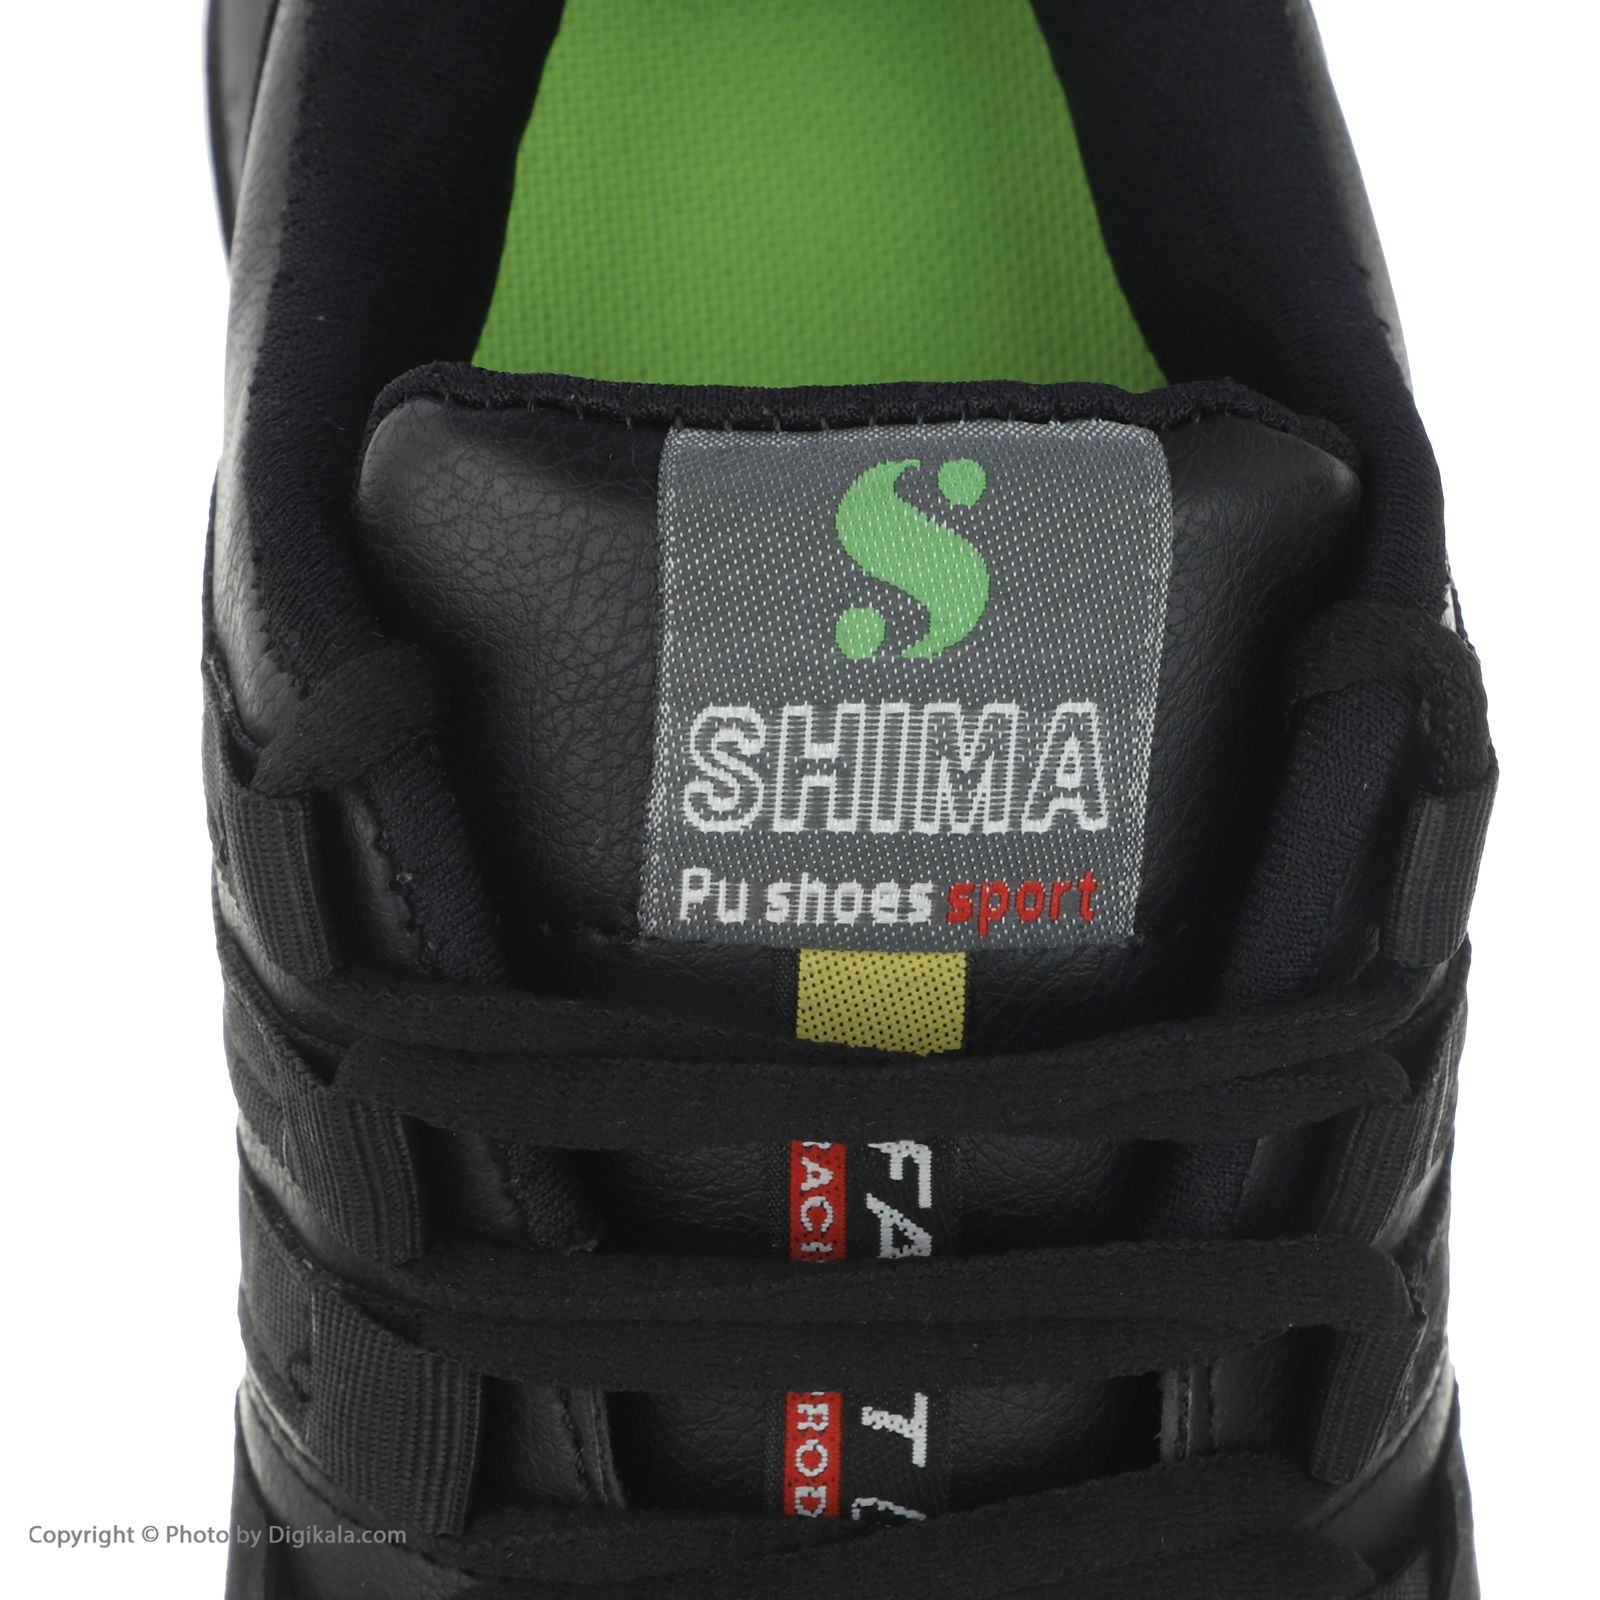 کفش پیاده روی شیما مدل 4562801 -  - 6